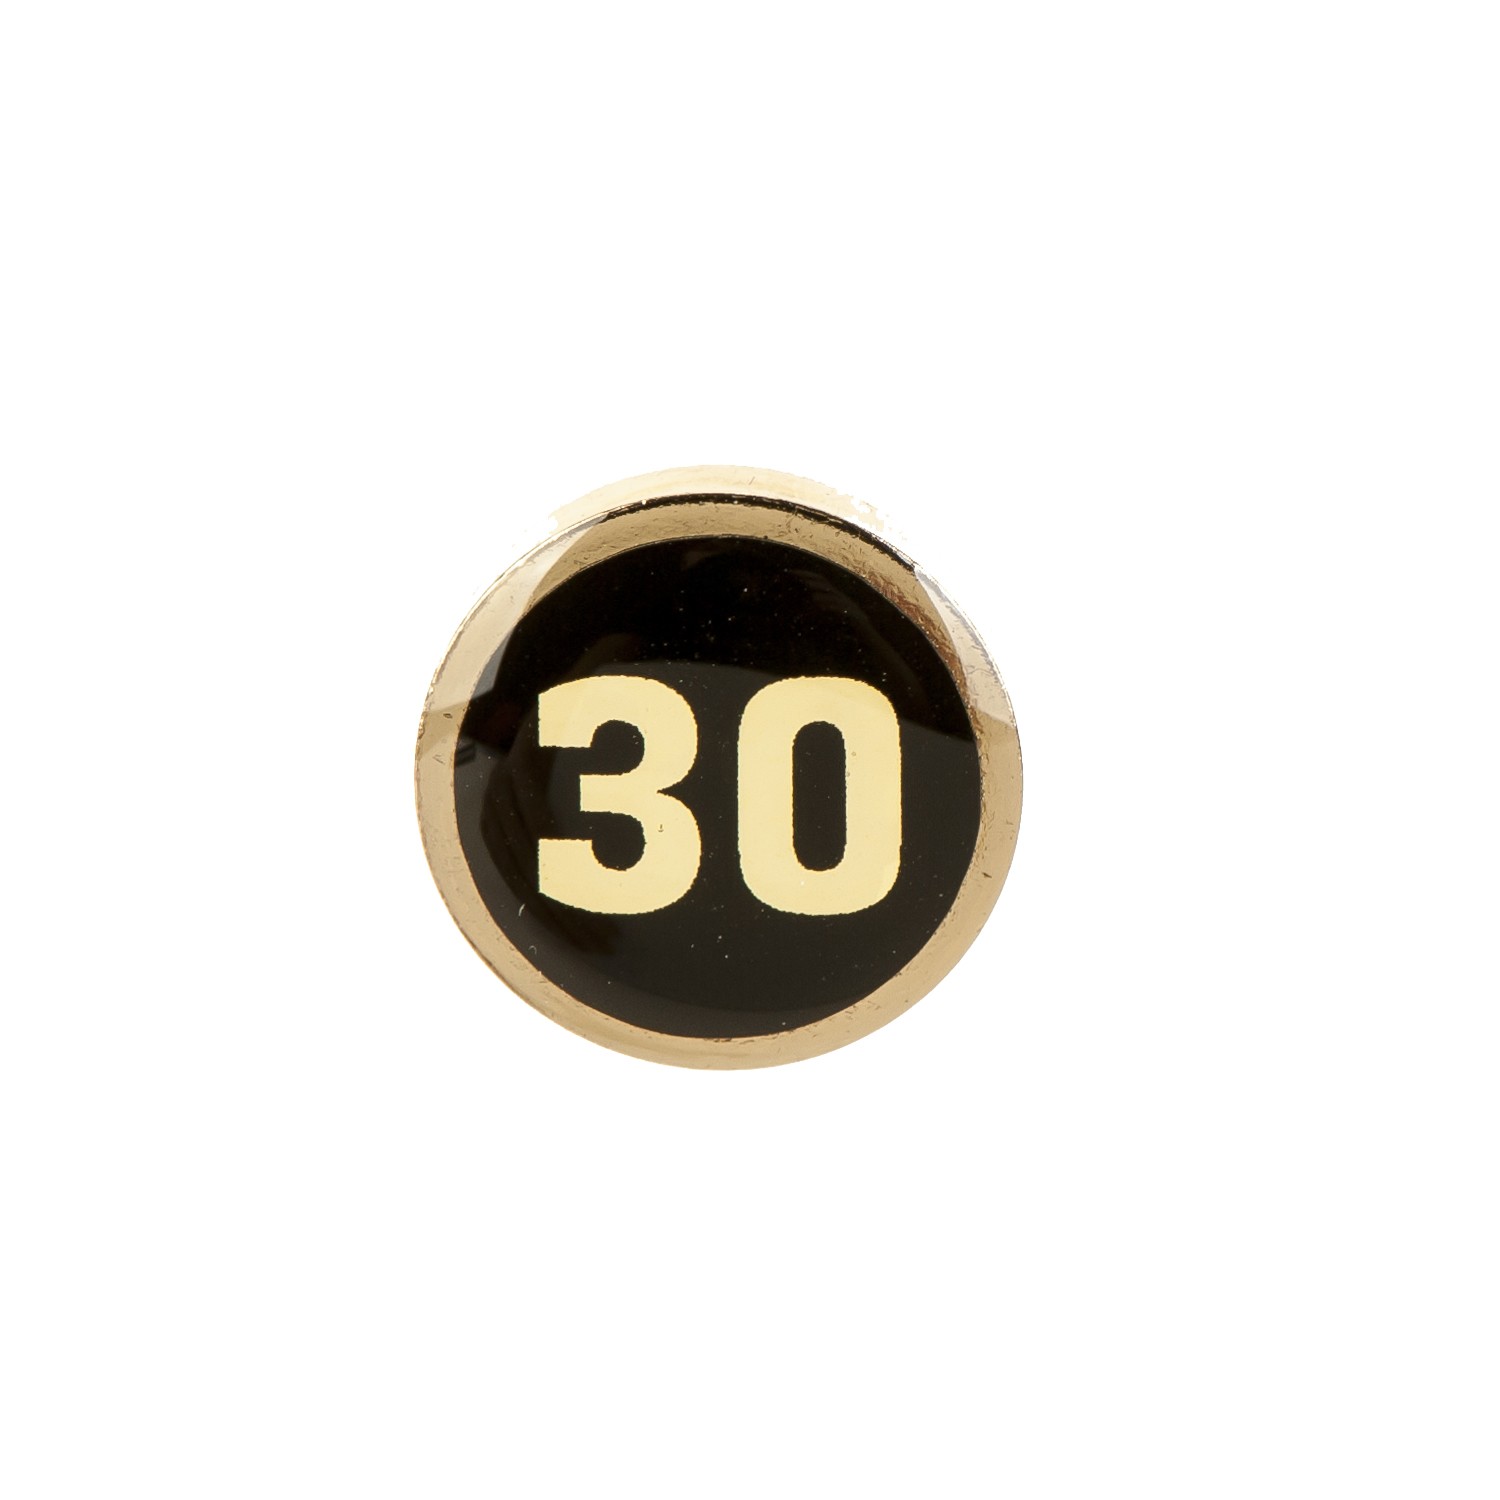 „Bajnokcsapat 30" kitűző (Fradi Múzeum CC BY-NC-SA)